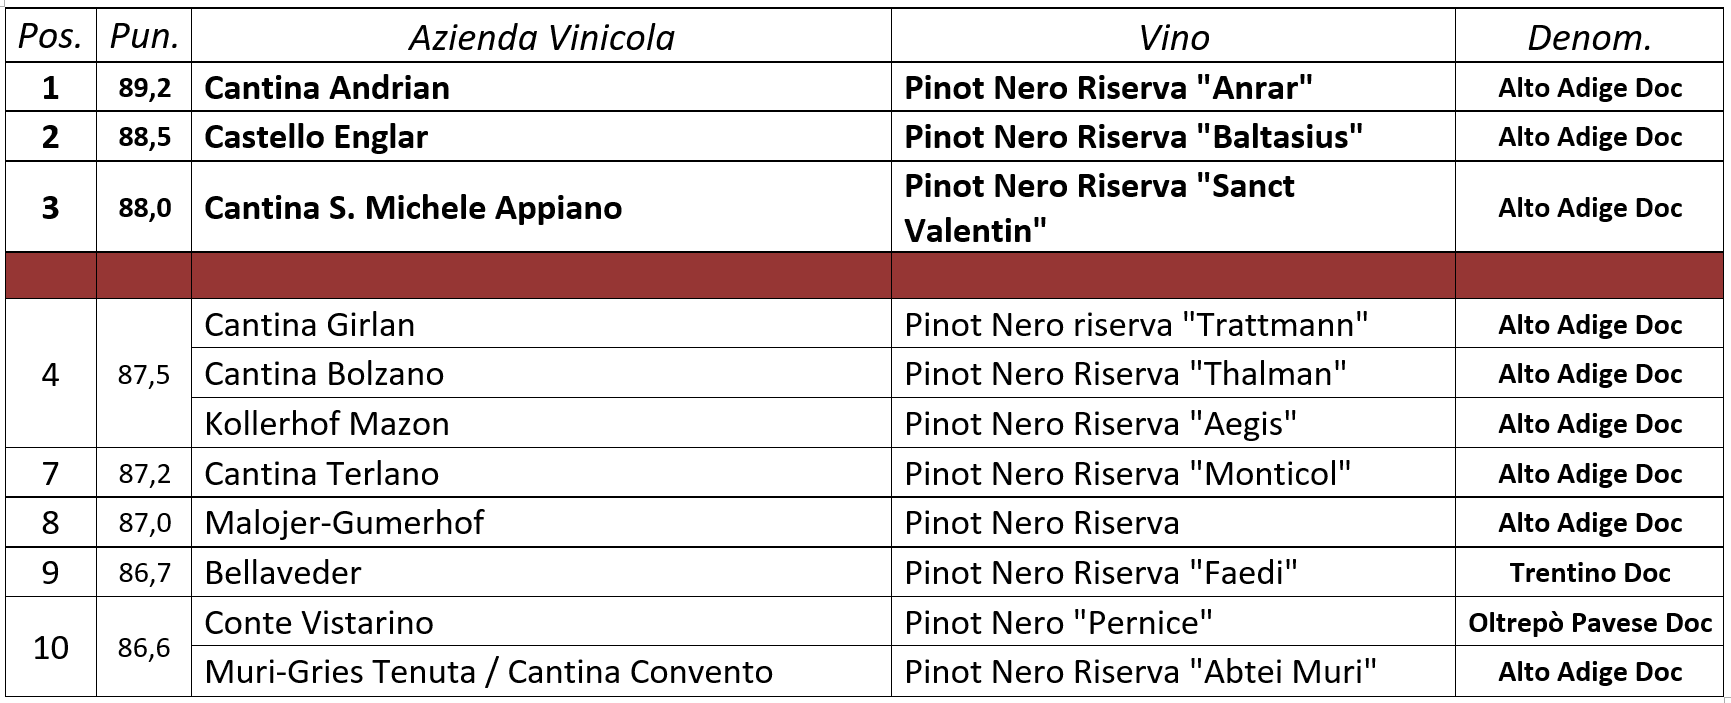 24° edizione delle Giornate del Pinot Nero, in scena dal 29 aprile al 2 maggio ad Egna e Montagna in Alto Adige.